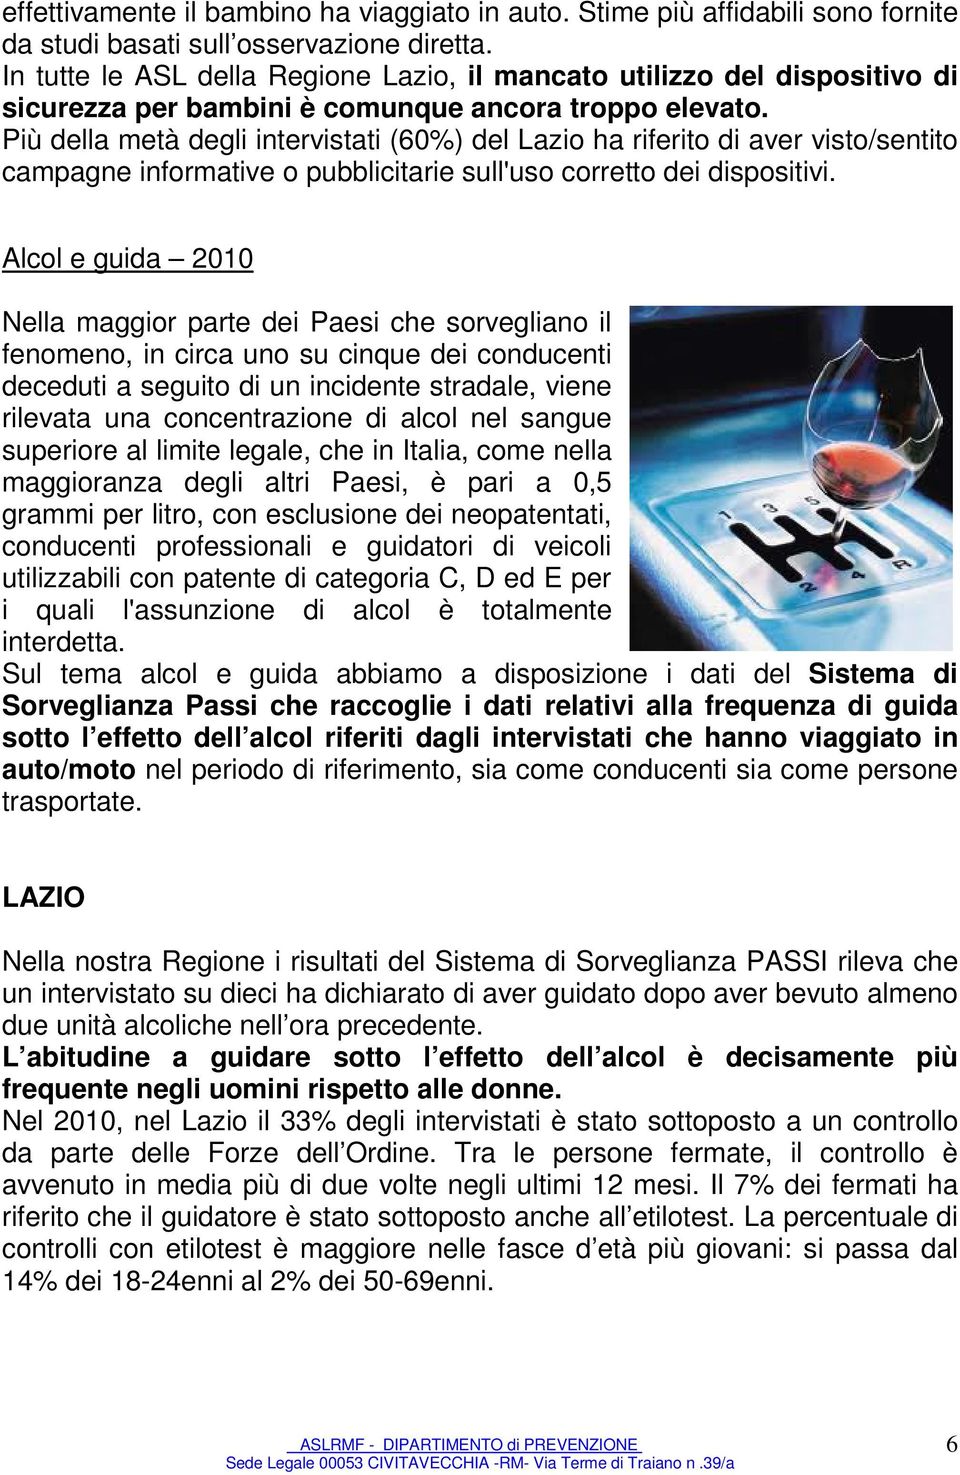 Più della metà degli intervistati (60%) del Lazio ha riferito di aver visto/sentito campagne informative o pubblicitarie sull'uso corretto dei dispositivi.